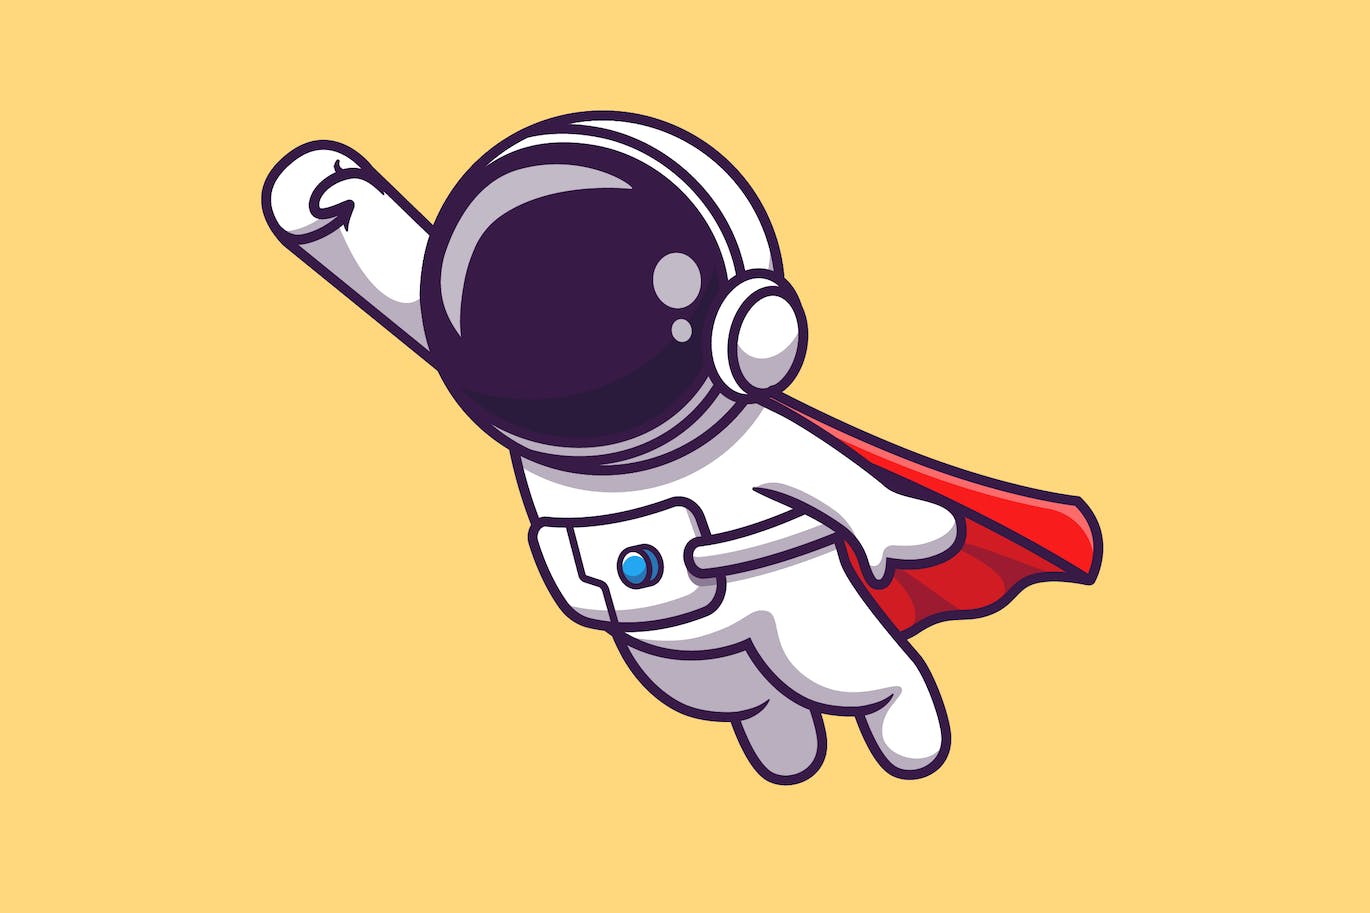 宇航员超级英雄飞行卡通矢量插画 Cute Astronaut Super Hero Flying Cartoon-1